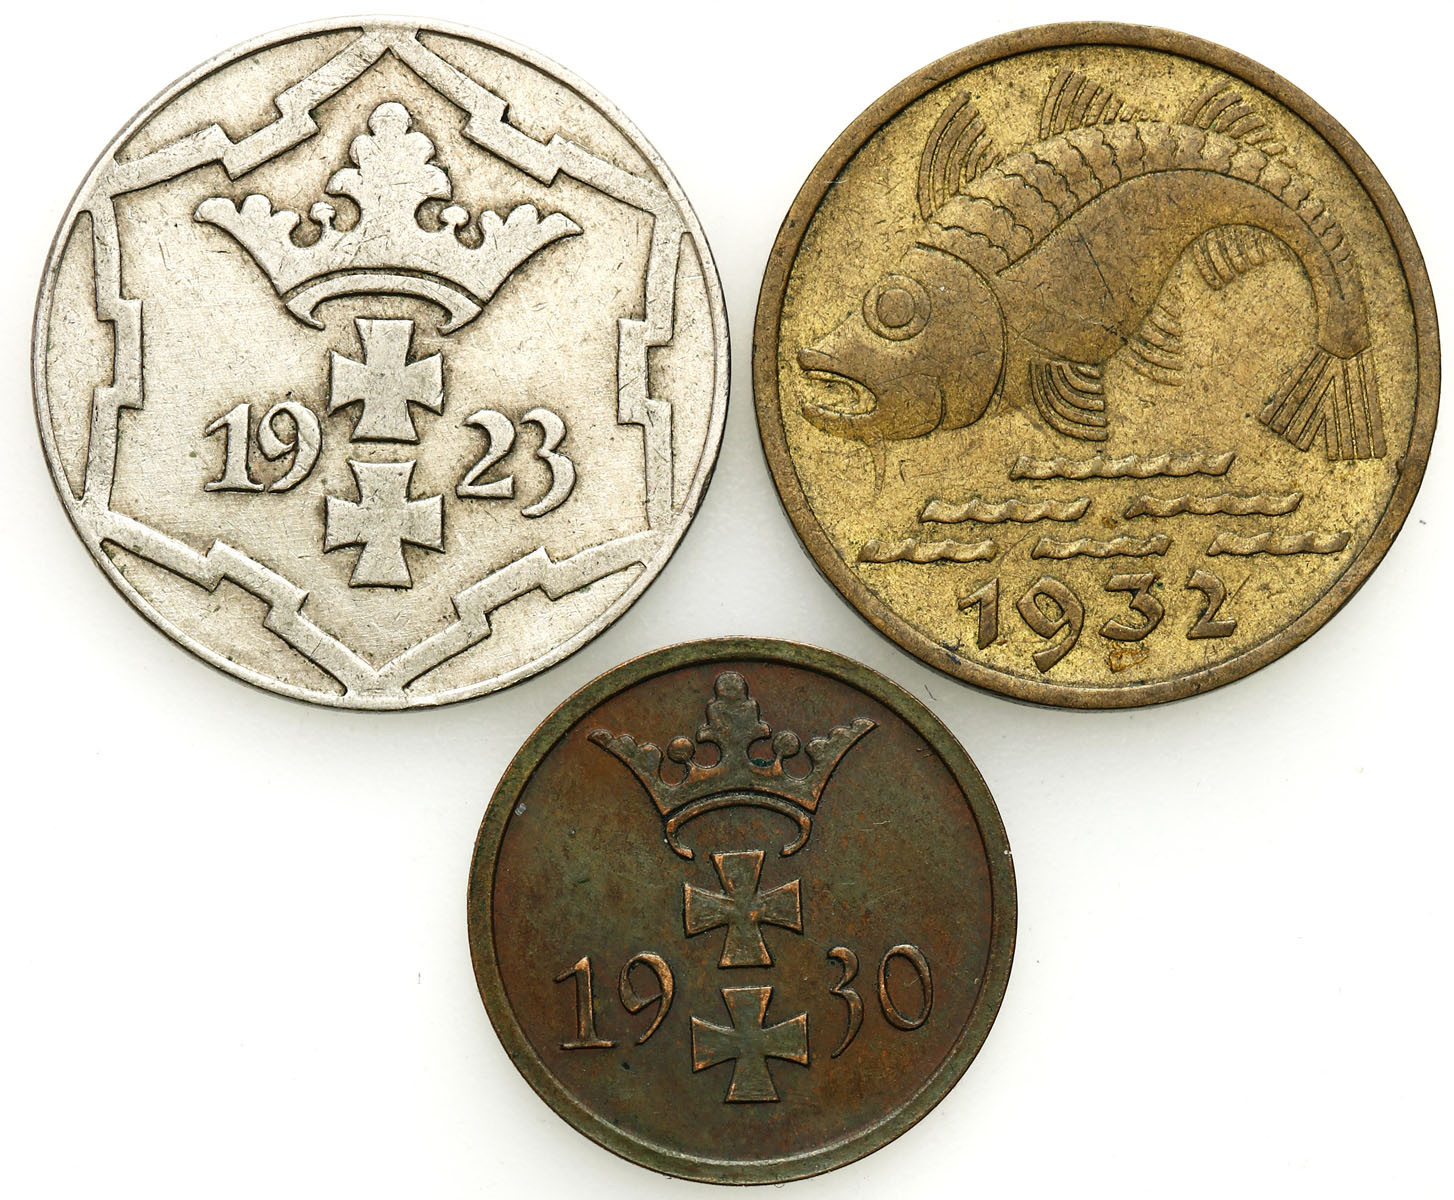 Wolne Miasto Gdańsk/Danzig. 1 fenig 1930, 10 fenigów 1923, 1932, zestaw 3 monet